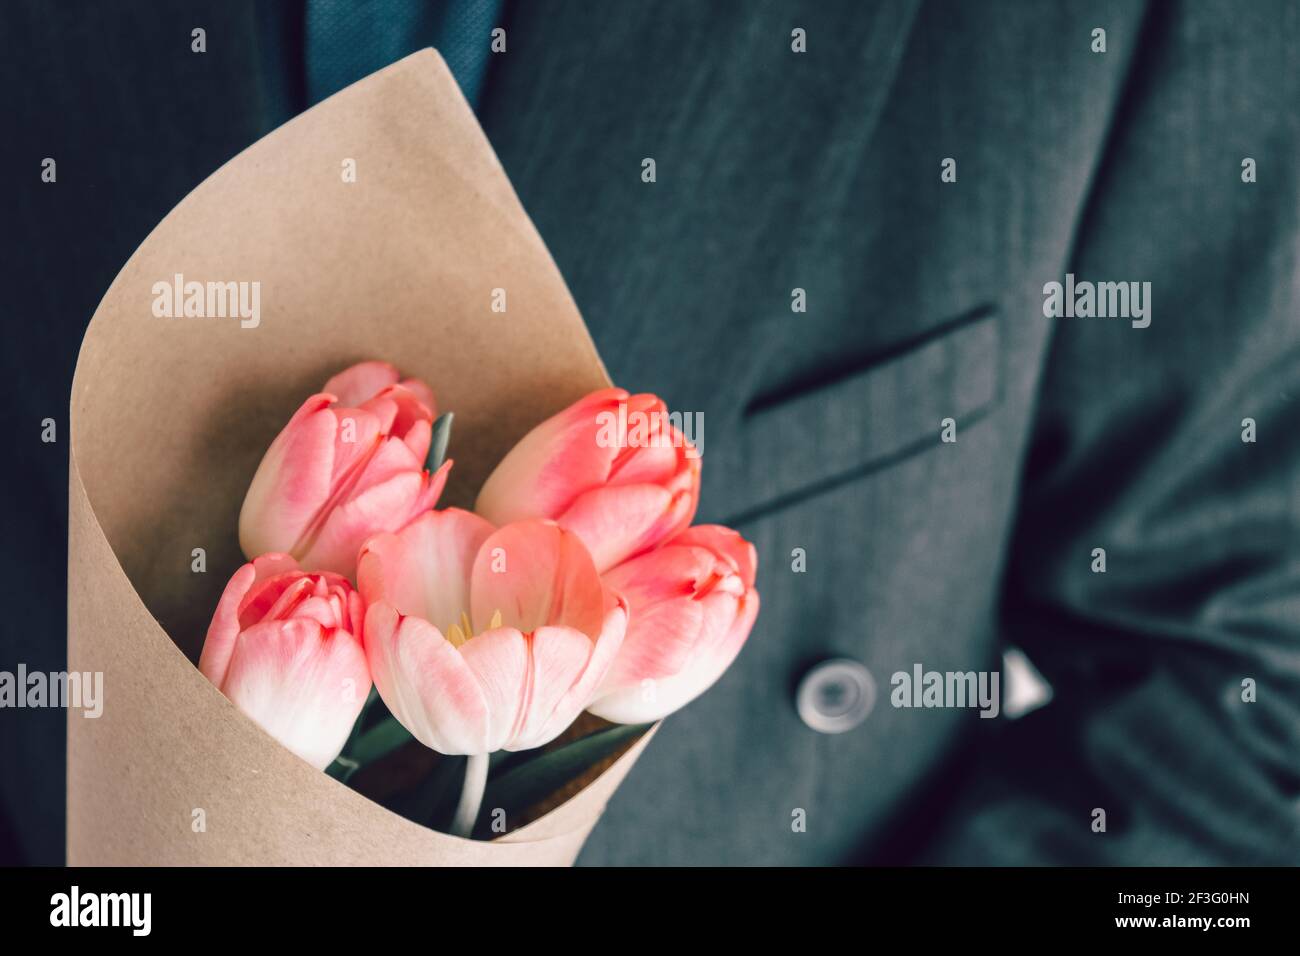 Uomo elegante che tiene un bouquet di tulipani rosa avvolti in carta artigianale. Sorpresa per la tua amata donna. Concetto di fuga romantica. Messa a fuoco selettiva. Foto Stock